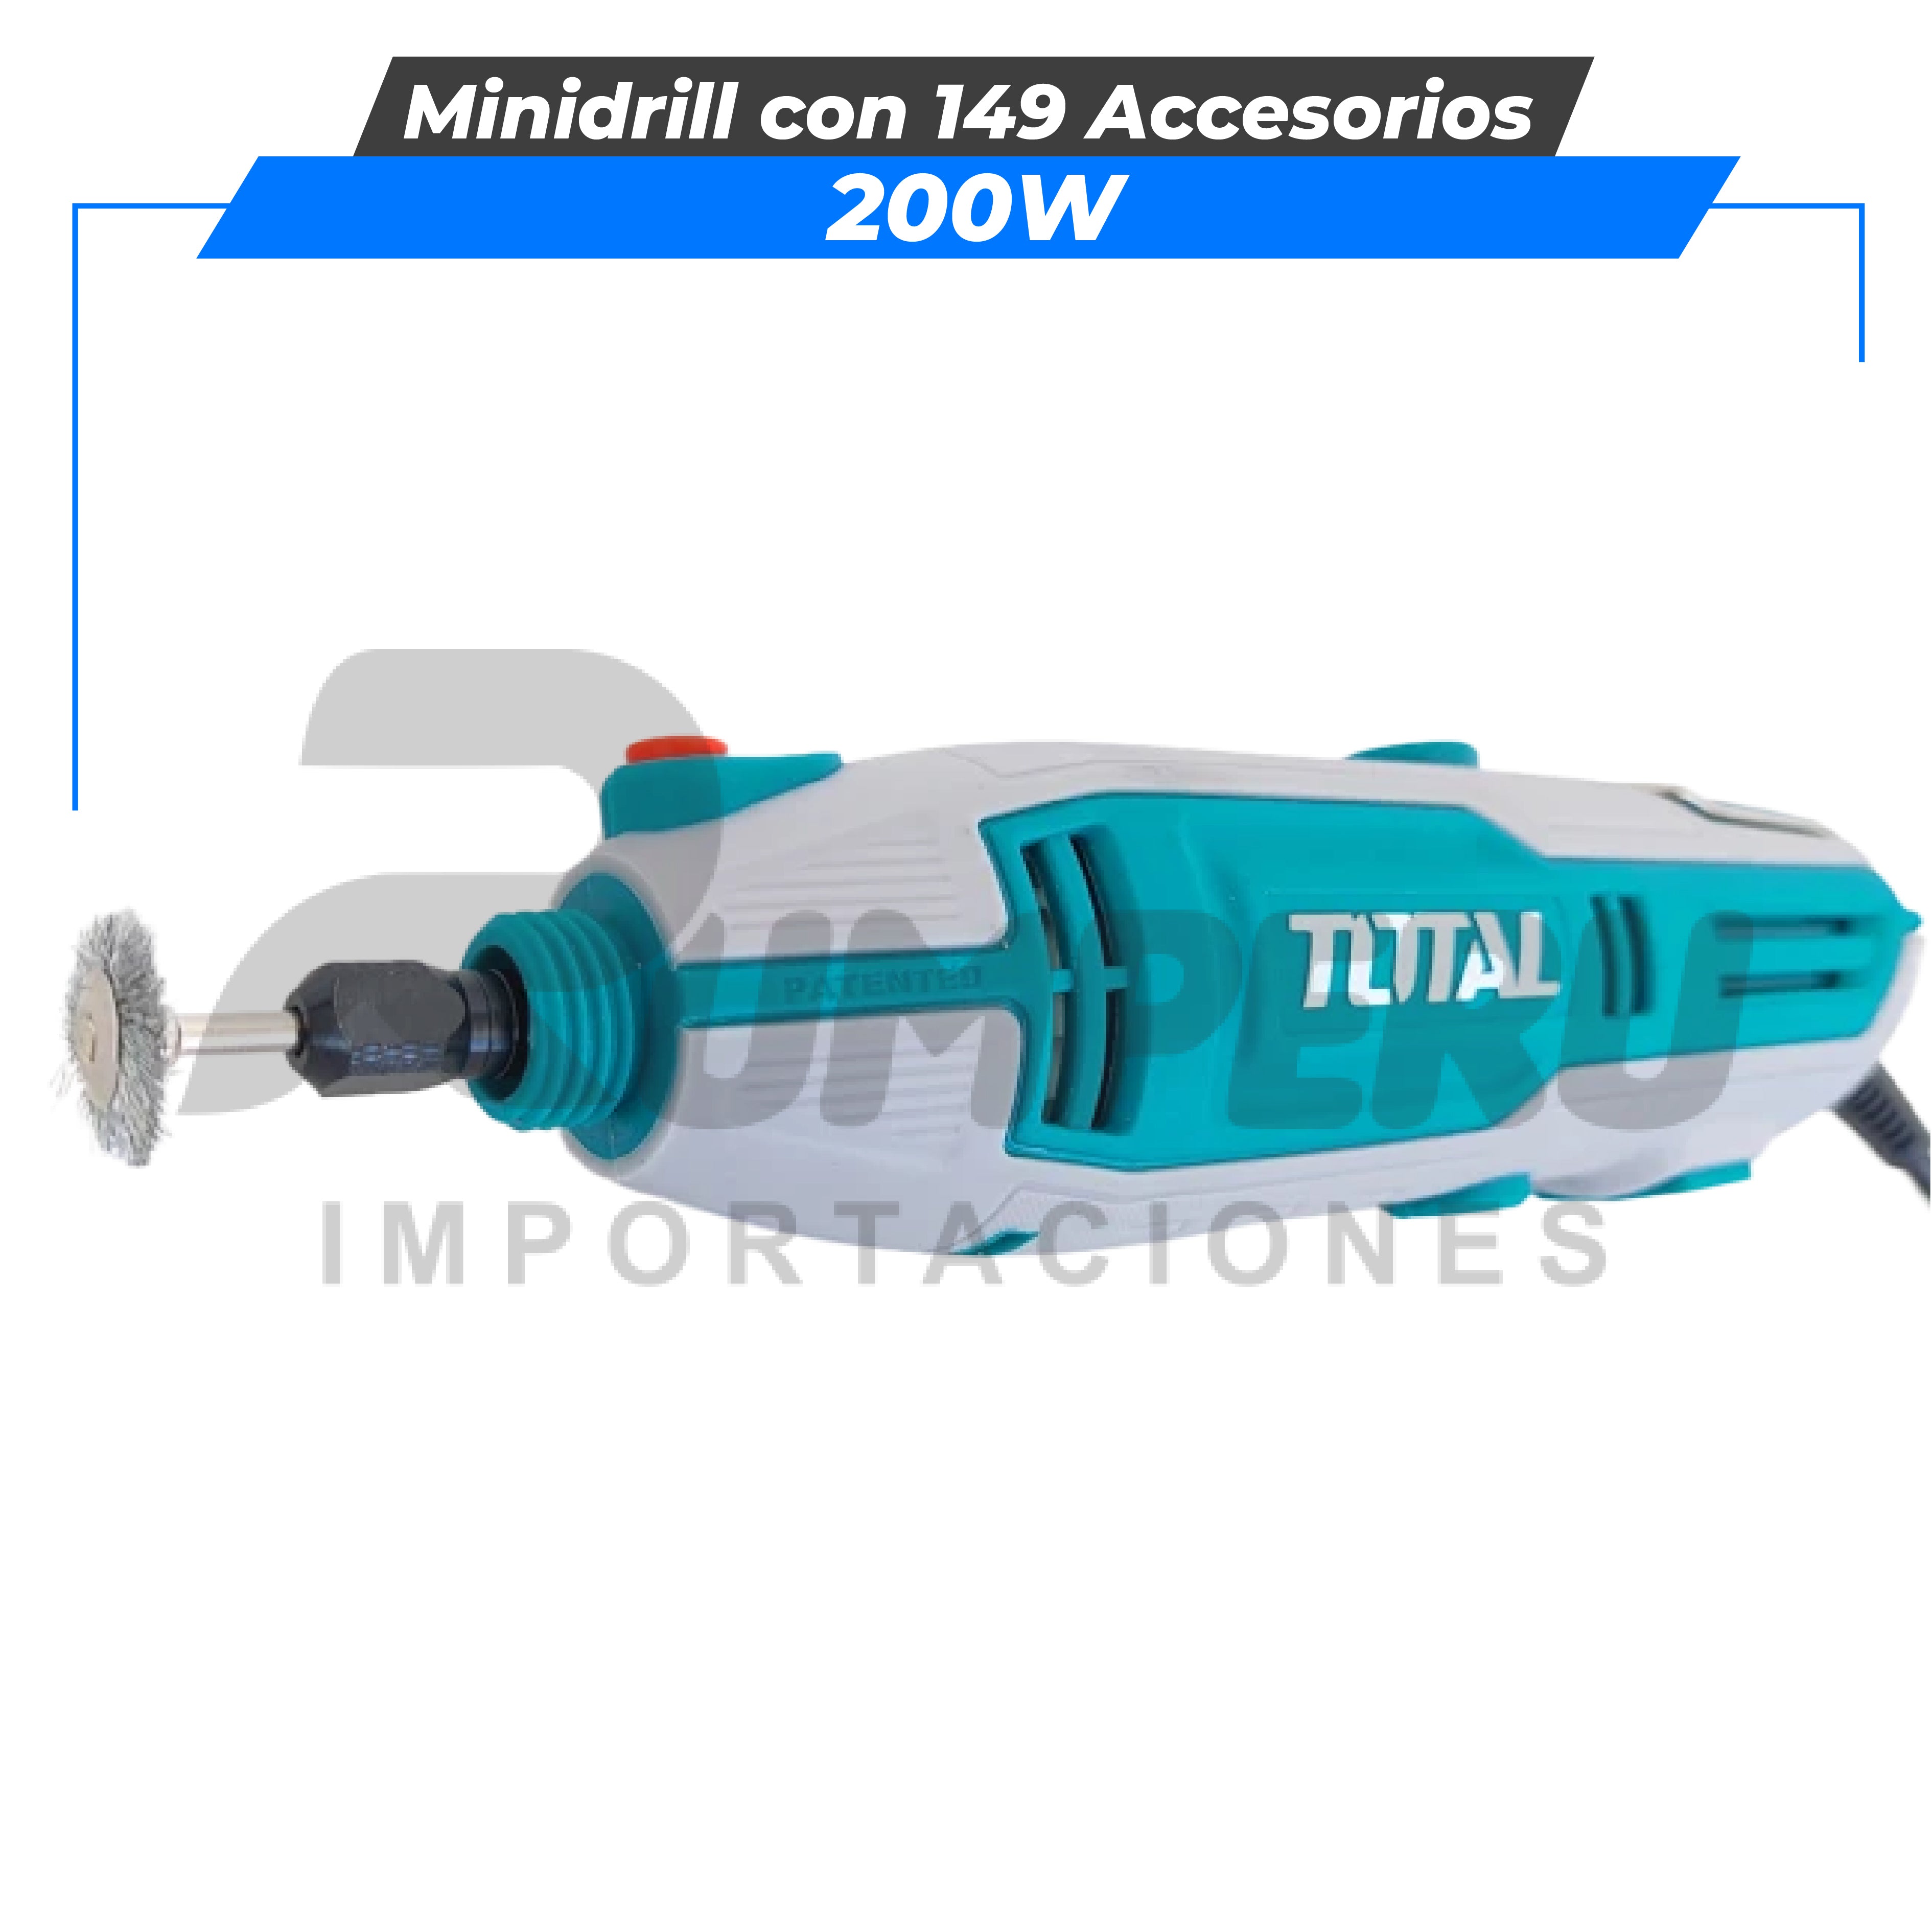 Minidrill 130W con 109 Accesorios